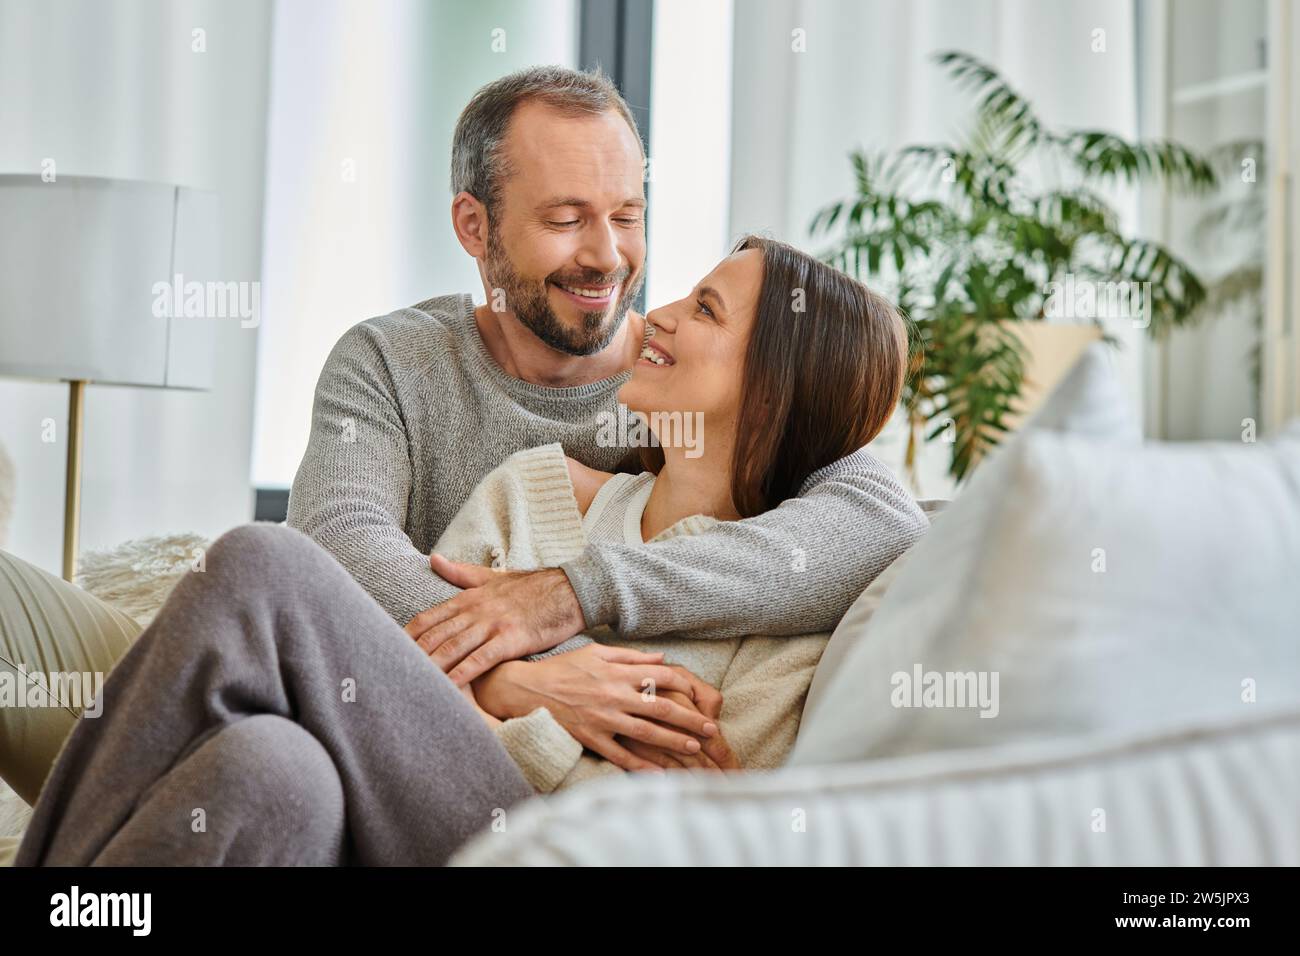 Fröhliches, kinderfreies Paar, das sich auf der Couch im Wohnzimmer ansieht, Liebe und Freude Stockfoto